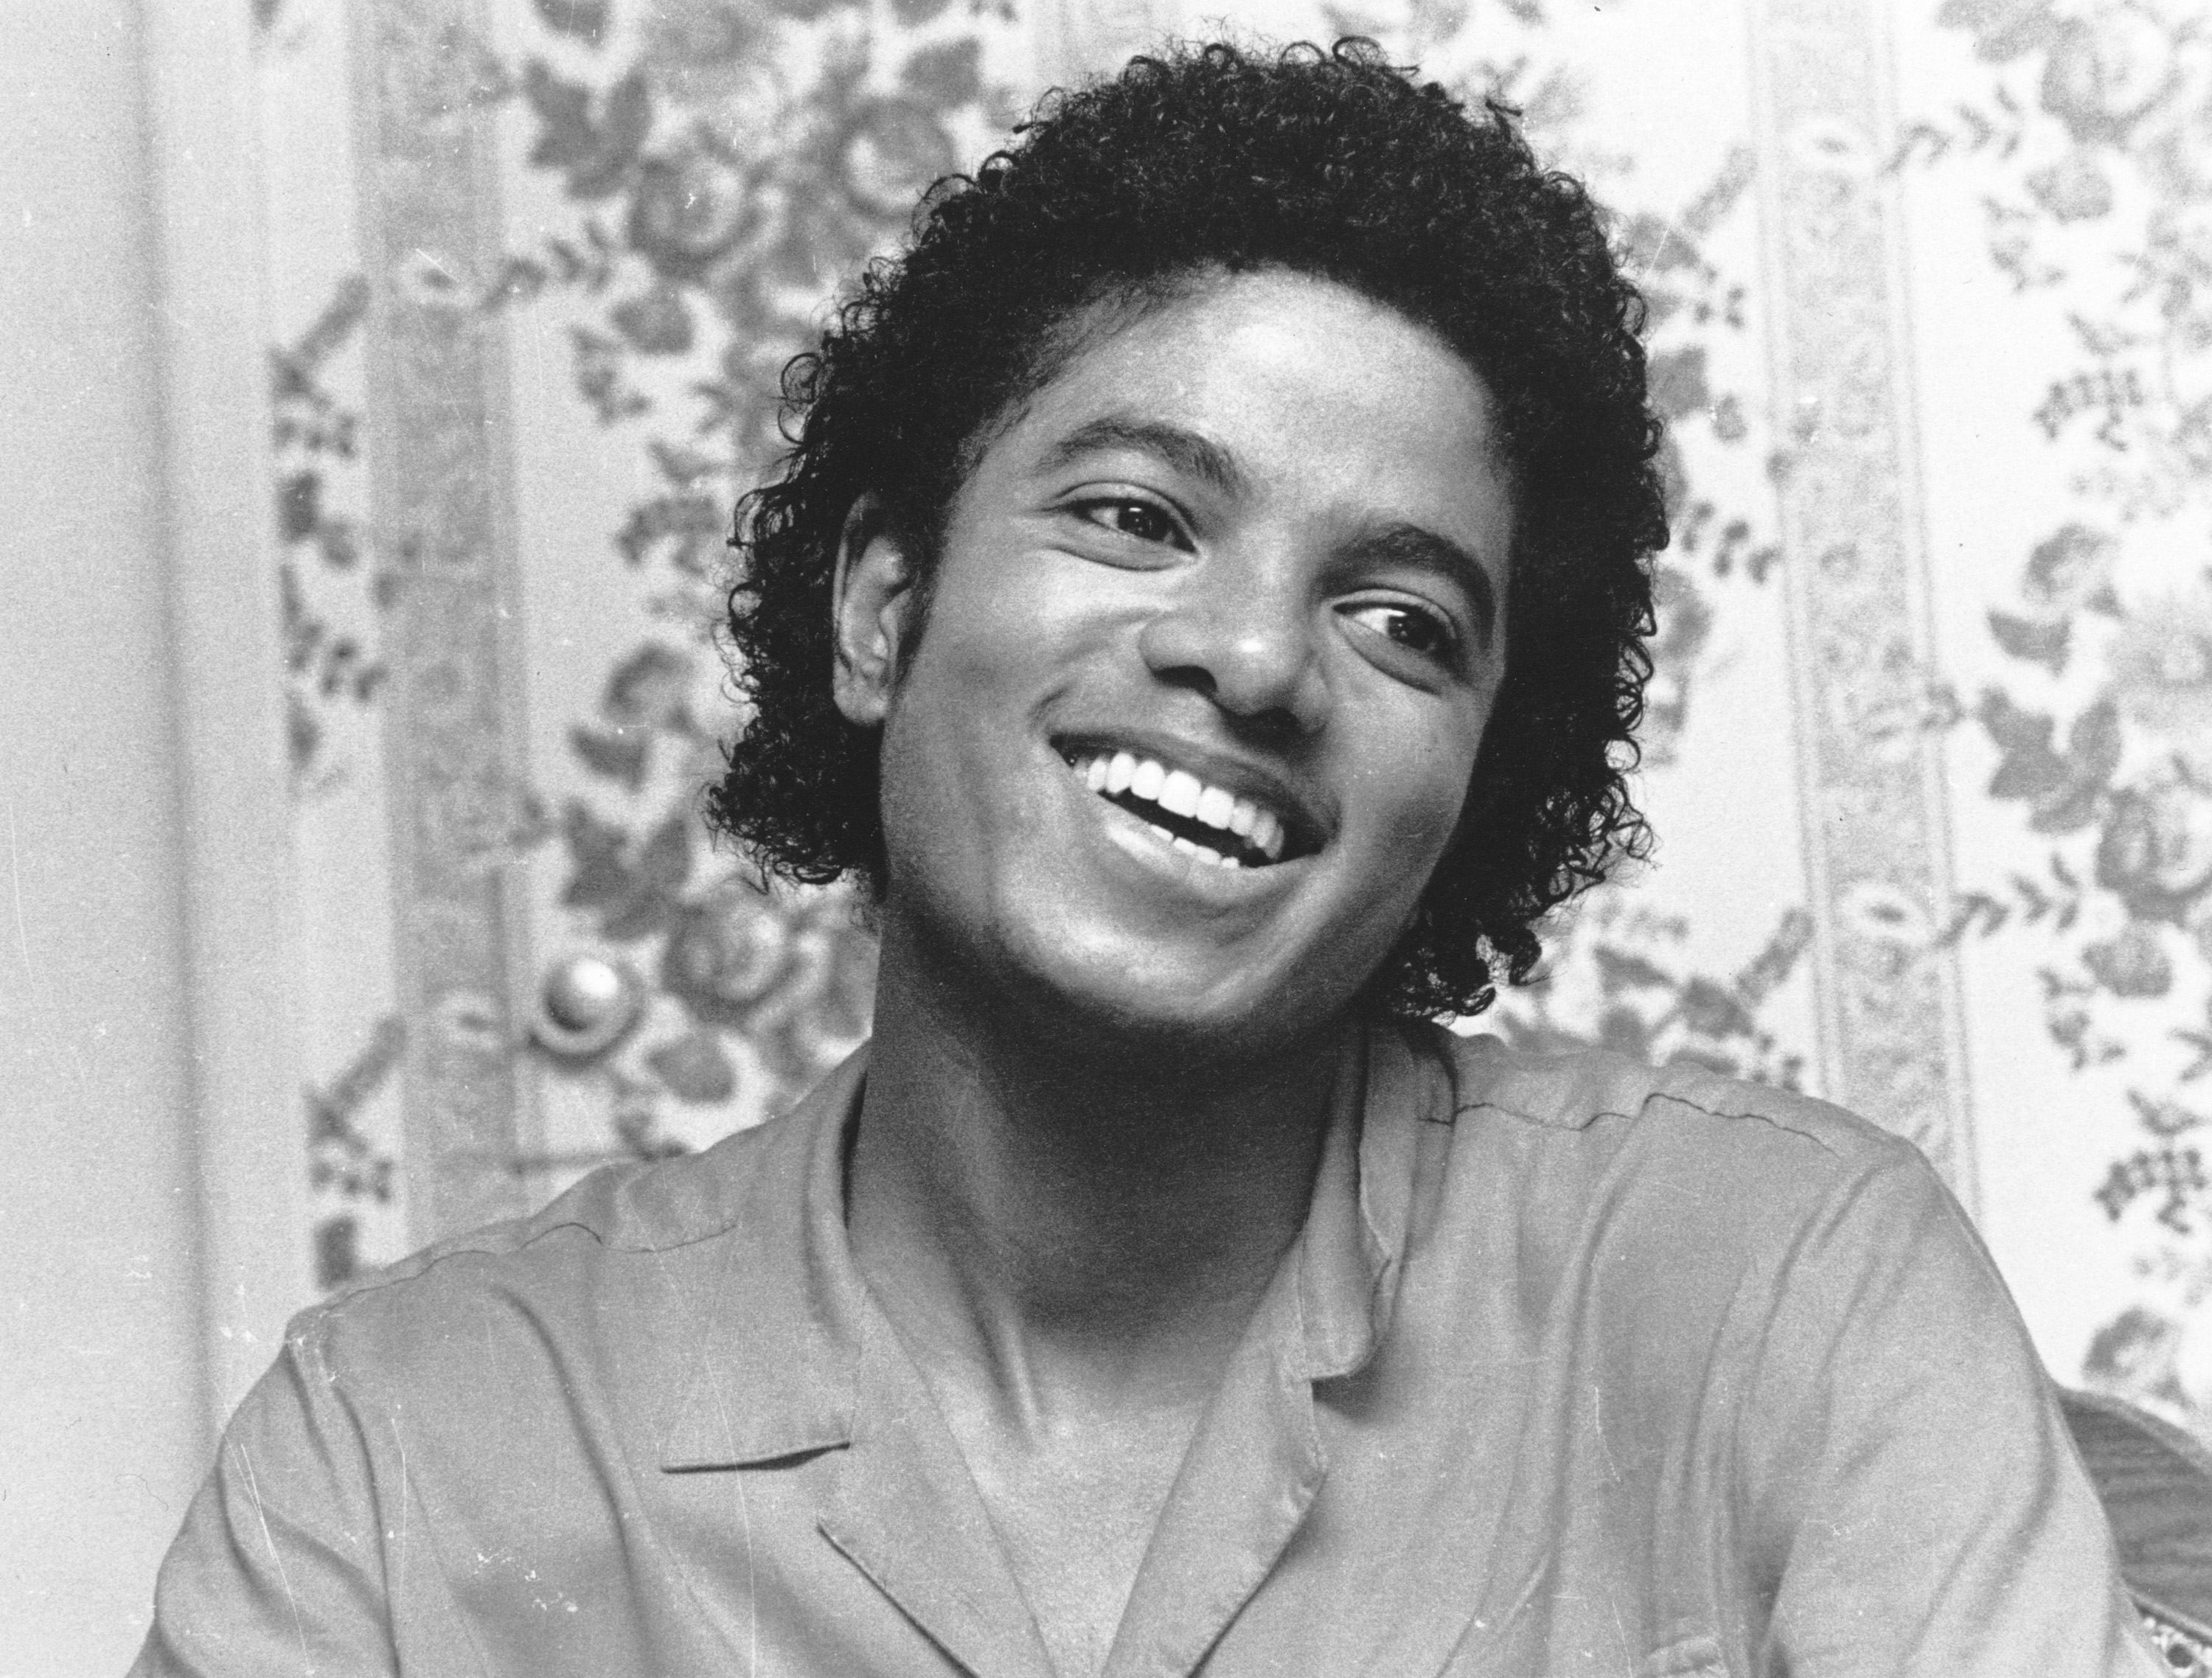 El llamado “Rey del Pop”, Michael Jackson, acaparó el tercer lugar de esta lista con una fortuna que ascendió a más de 75 millones de dólares   (Photo by Chris Walter/WireImage)